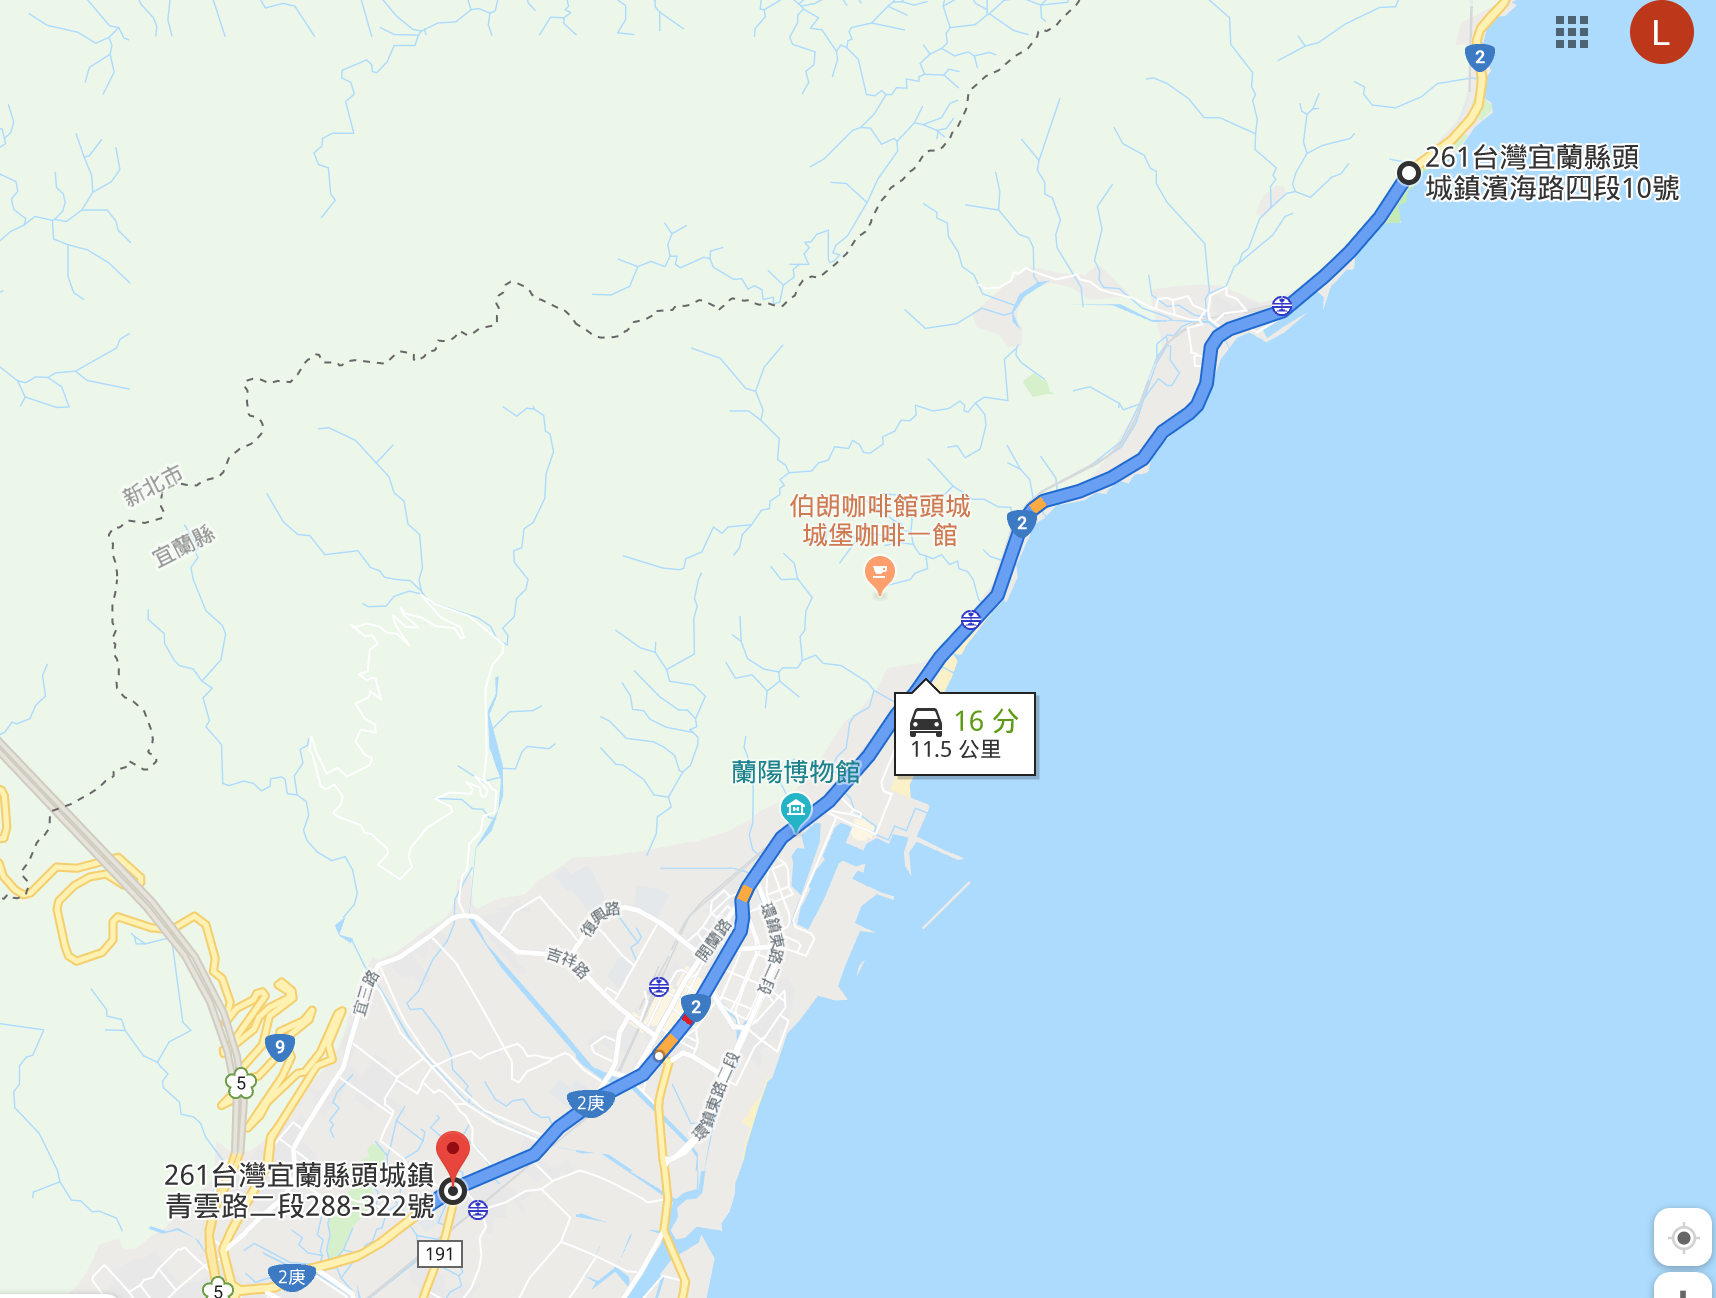 礙於沒電的Gogoro S2未換電無法喚醒車輛，所以最後的里程數我們透過Google Maps計算為76公里（前述的64公里+iE 125沒電後S2獨自完成的12公里）